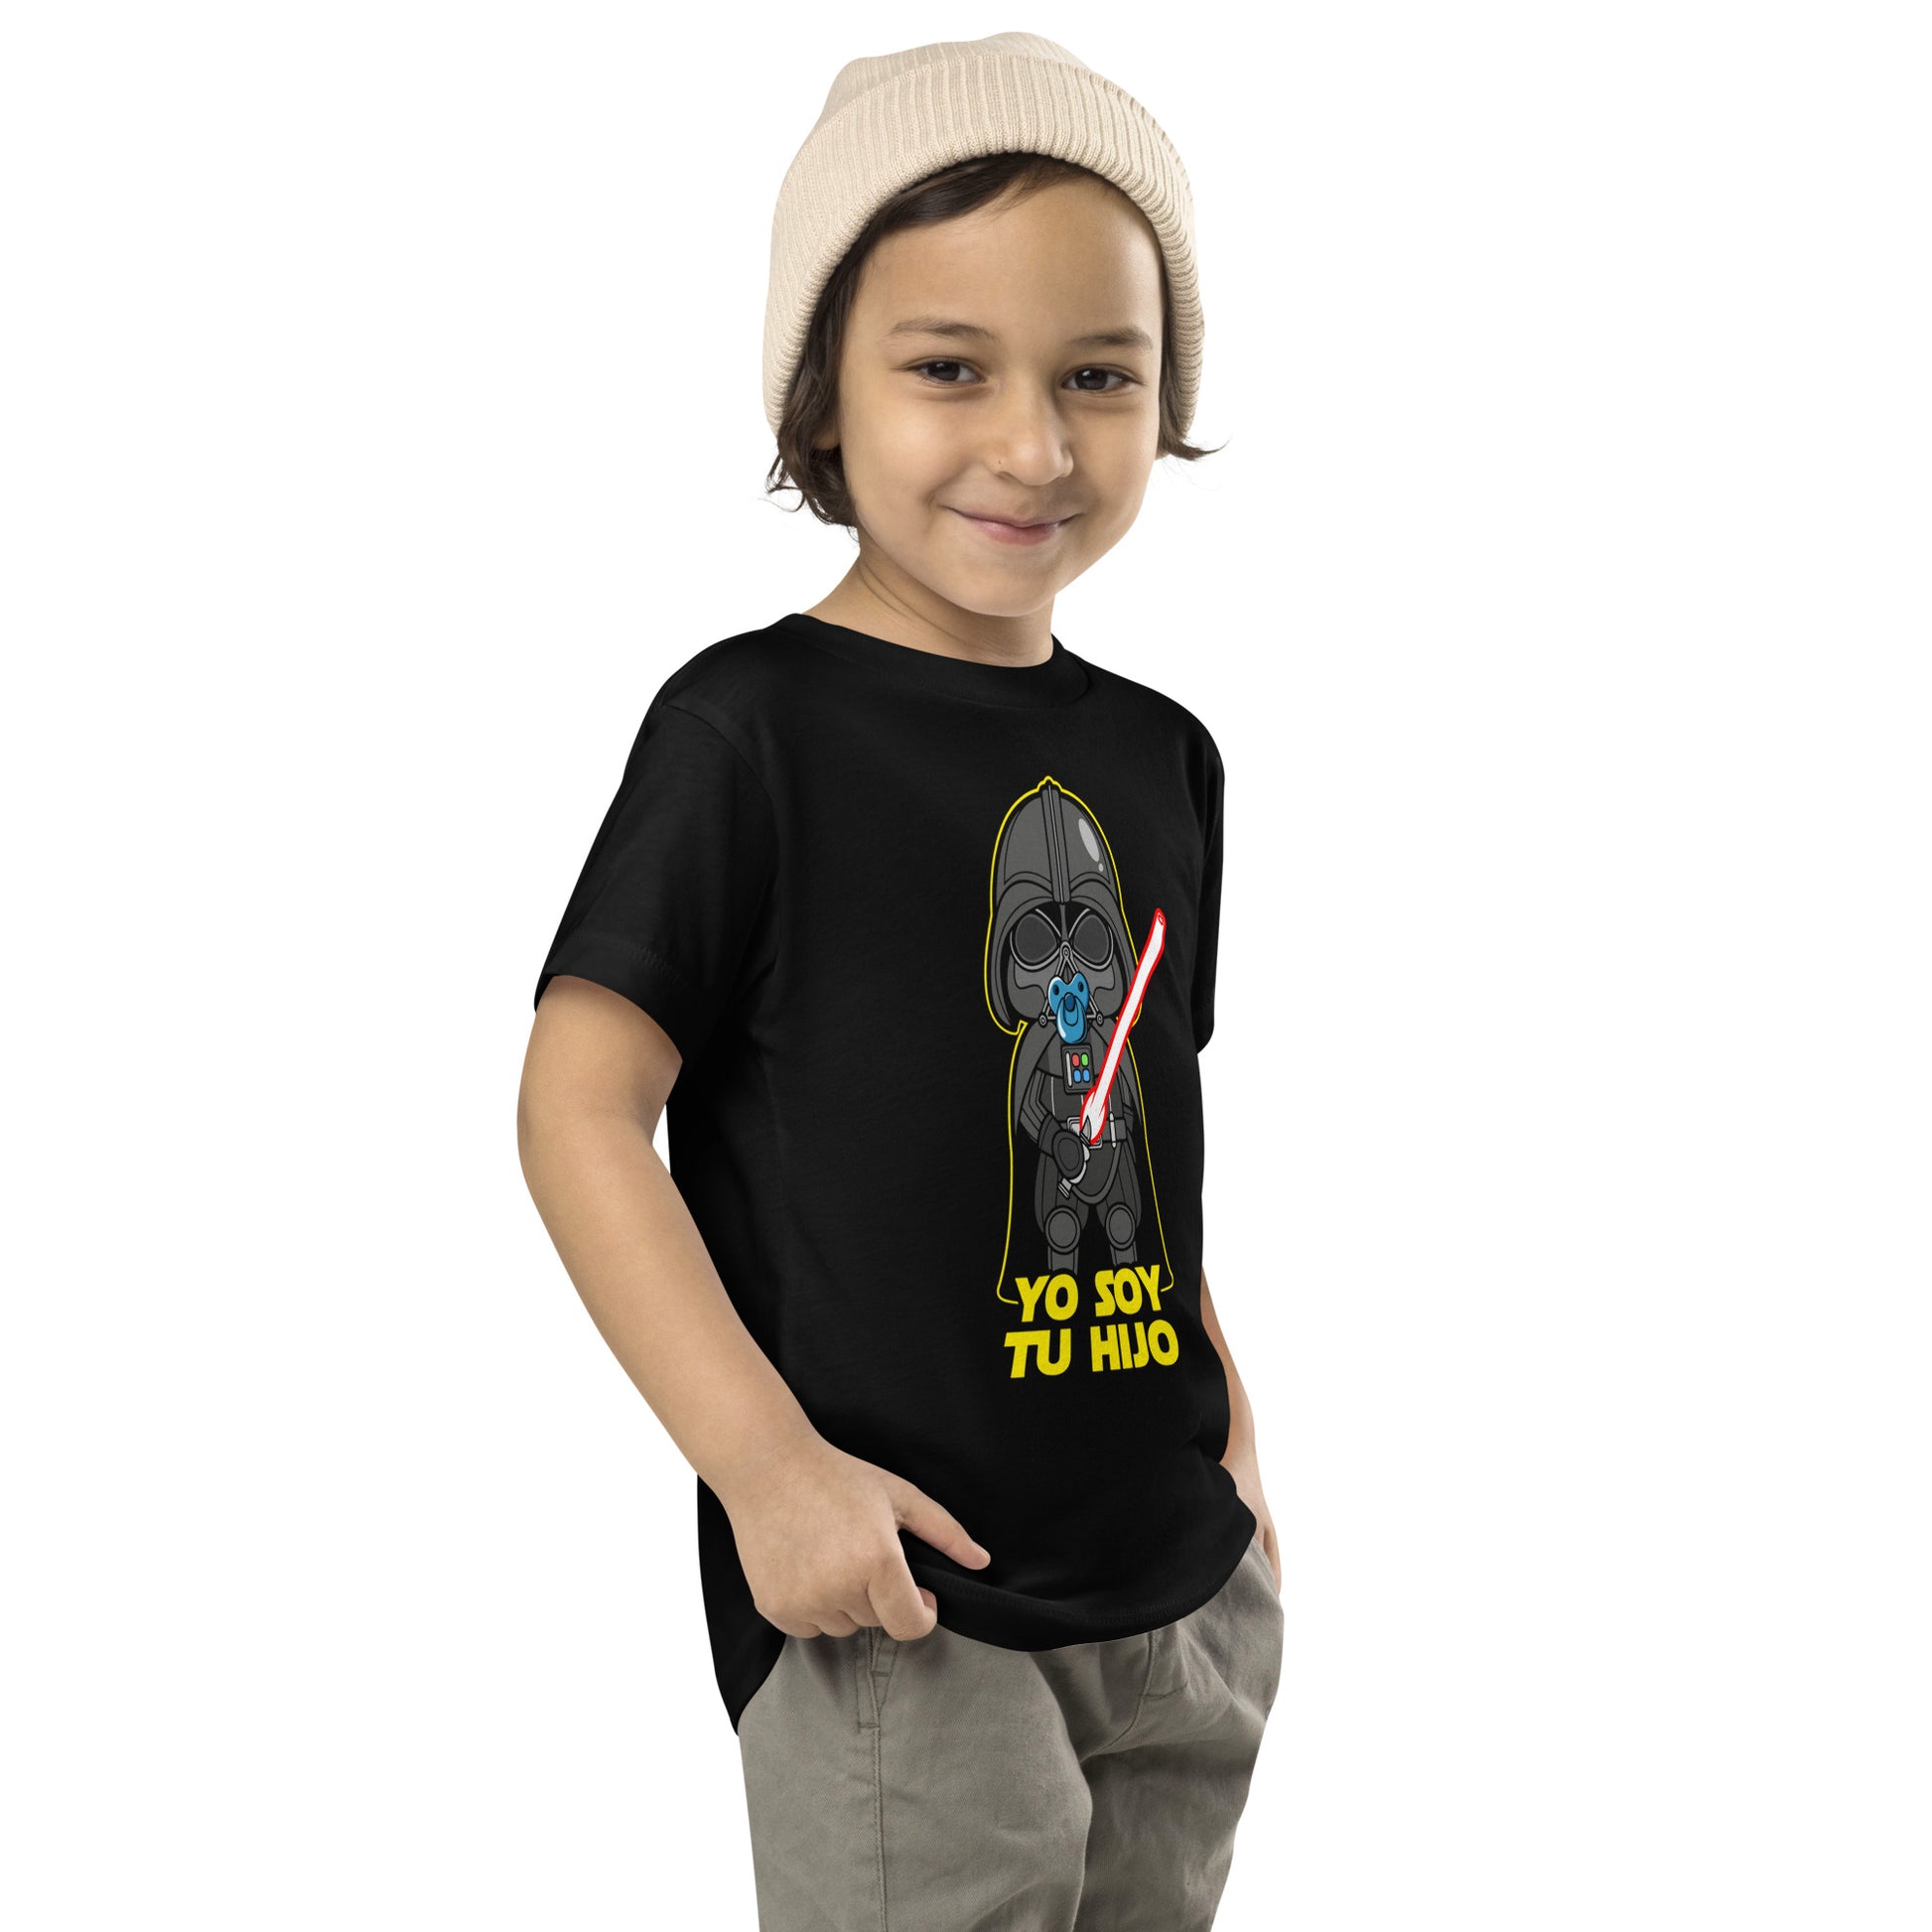 Camiseta de niño Yo Soy Tu Hijo con Darth Vader de Star Wars. Color negro.